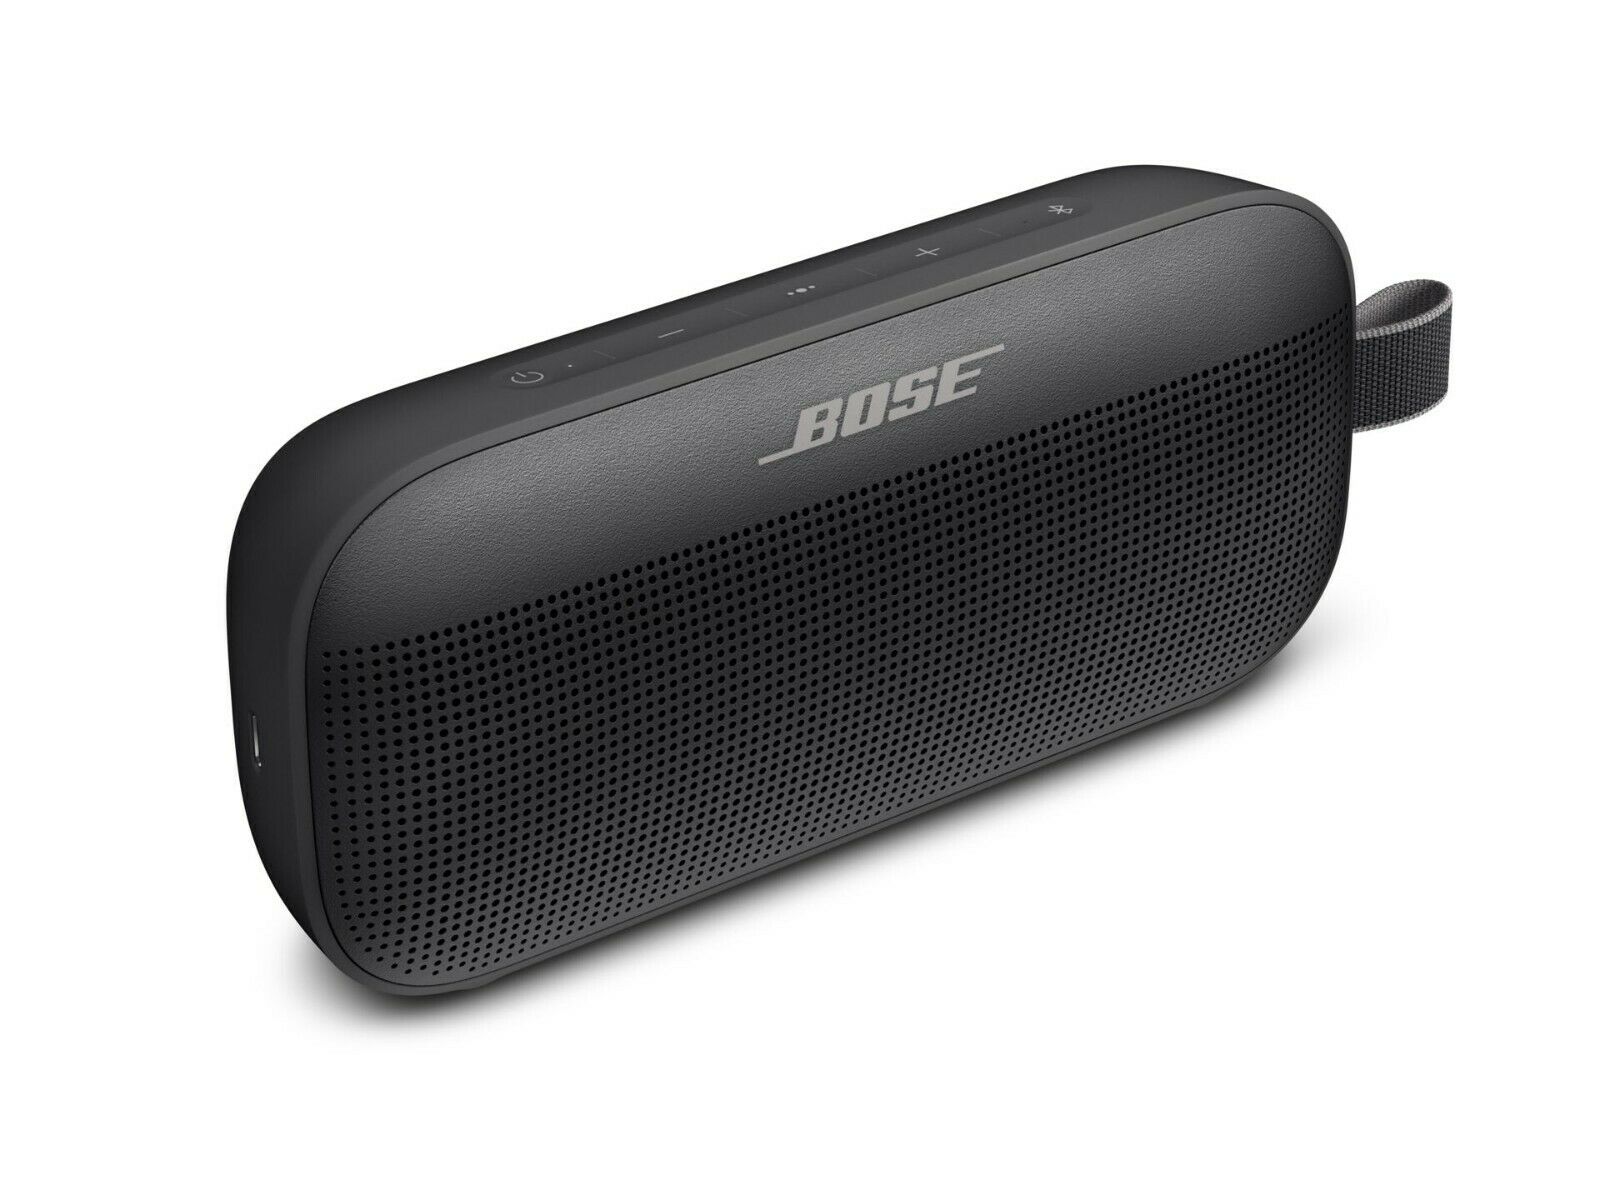 Altavoz impermeable Bluetooth para exteriores SoundLink Flex de Bose, completamente nuevo y sellado 